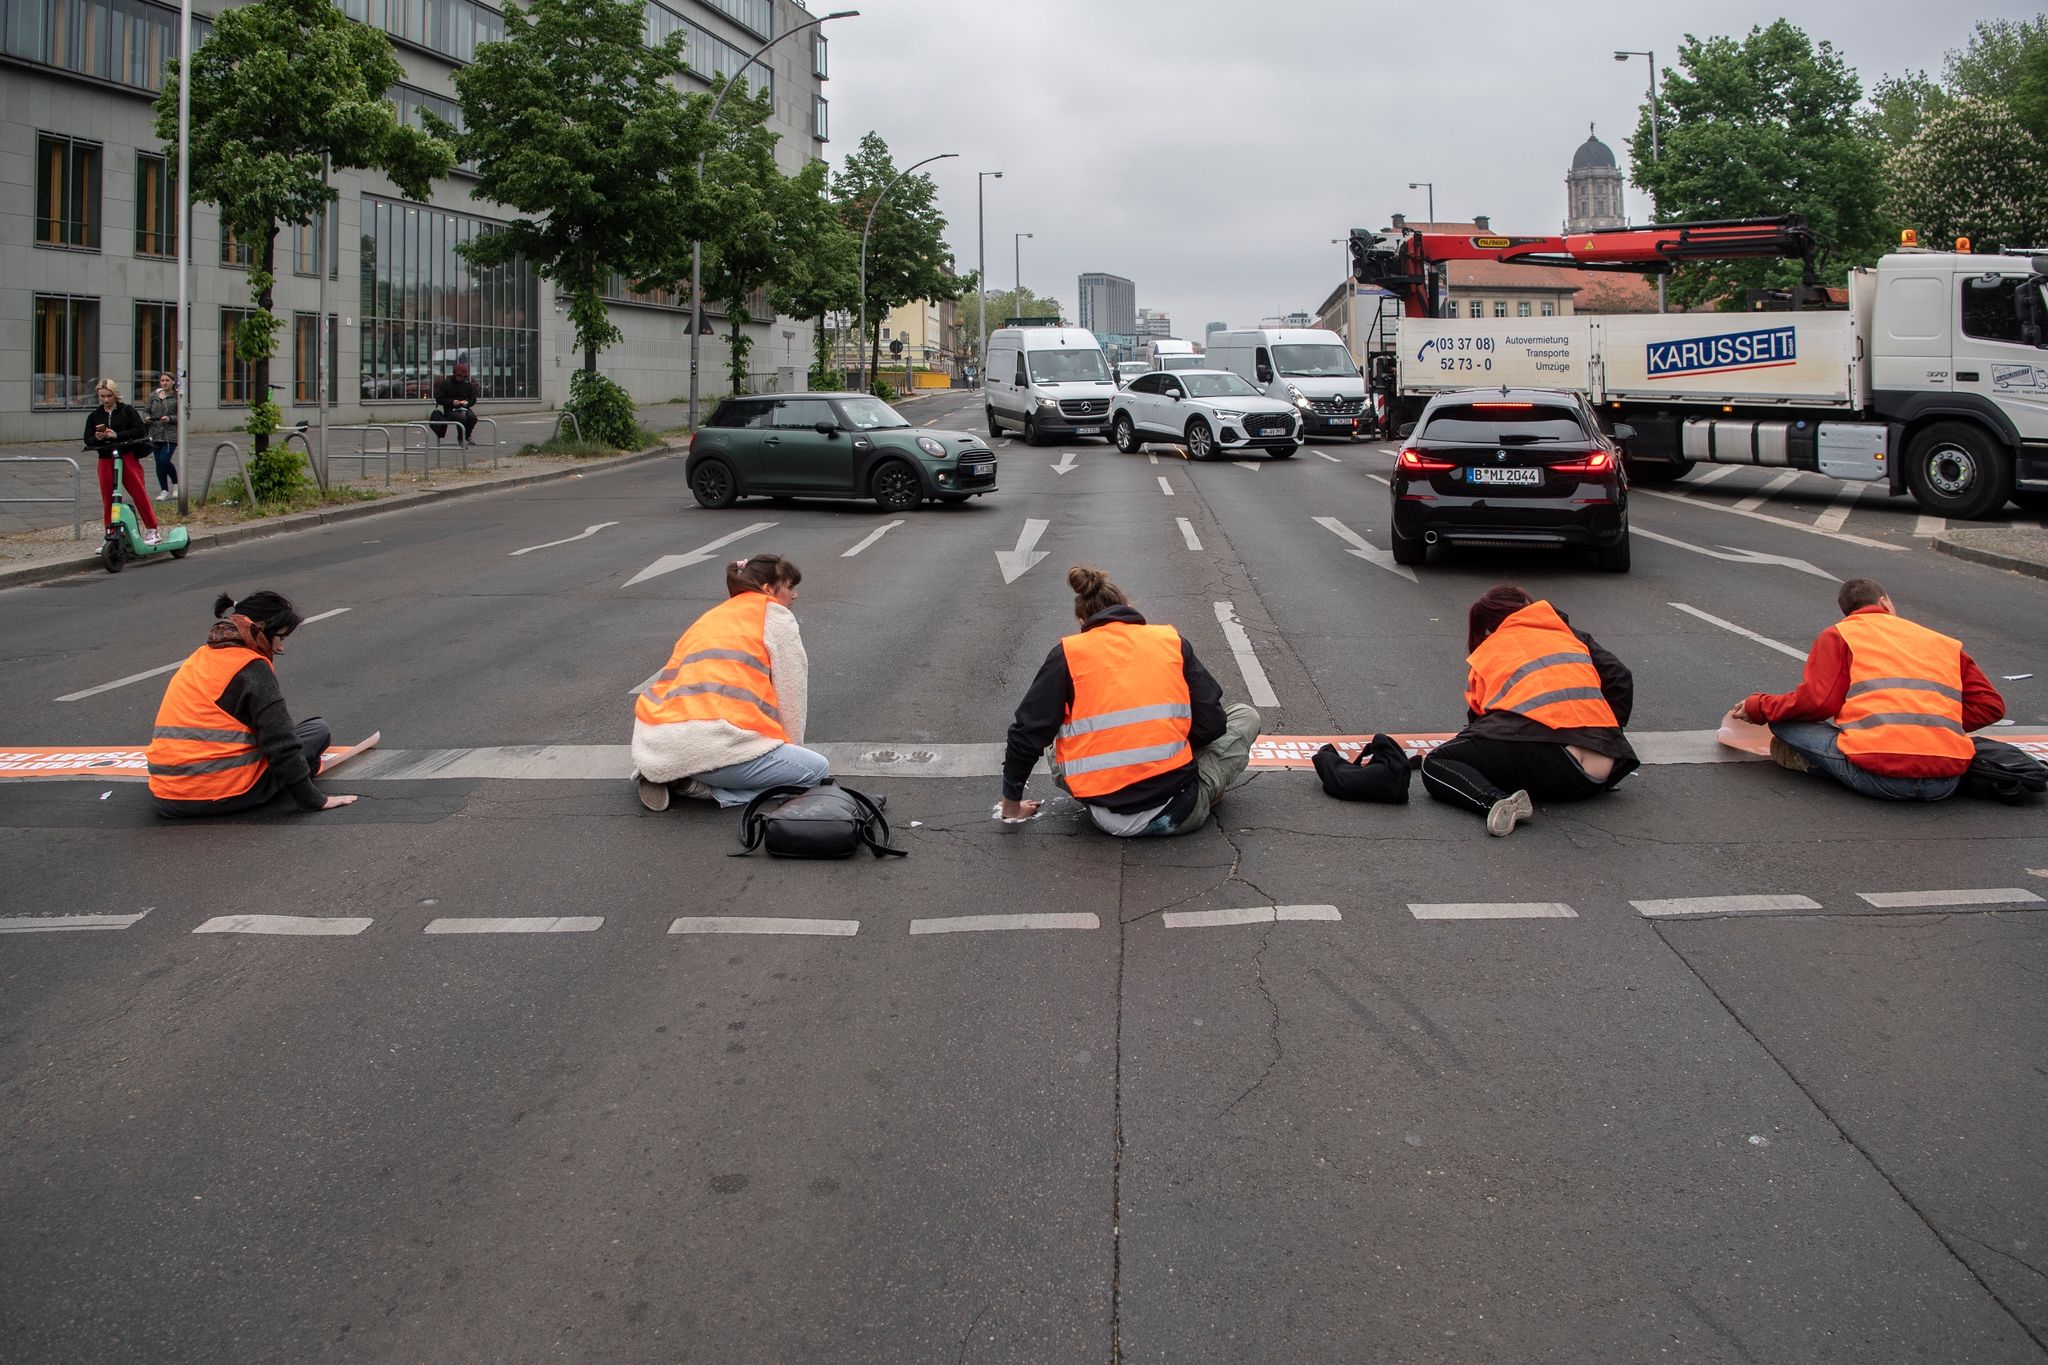 Aktivisten der Klimagruppe Letzte Generation sorgen mit Straßenblockaden immer wieder für Kontroverse.